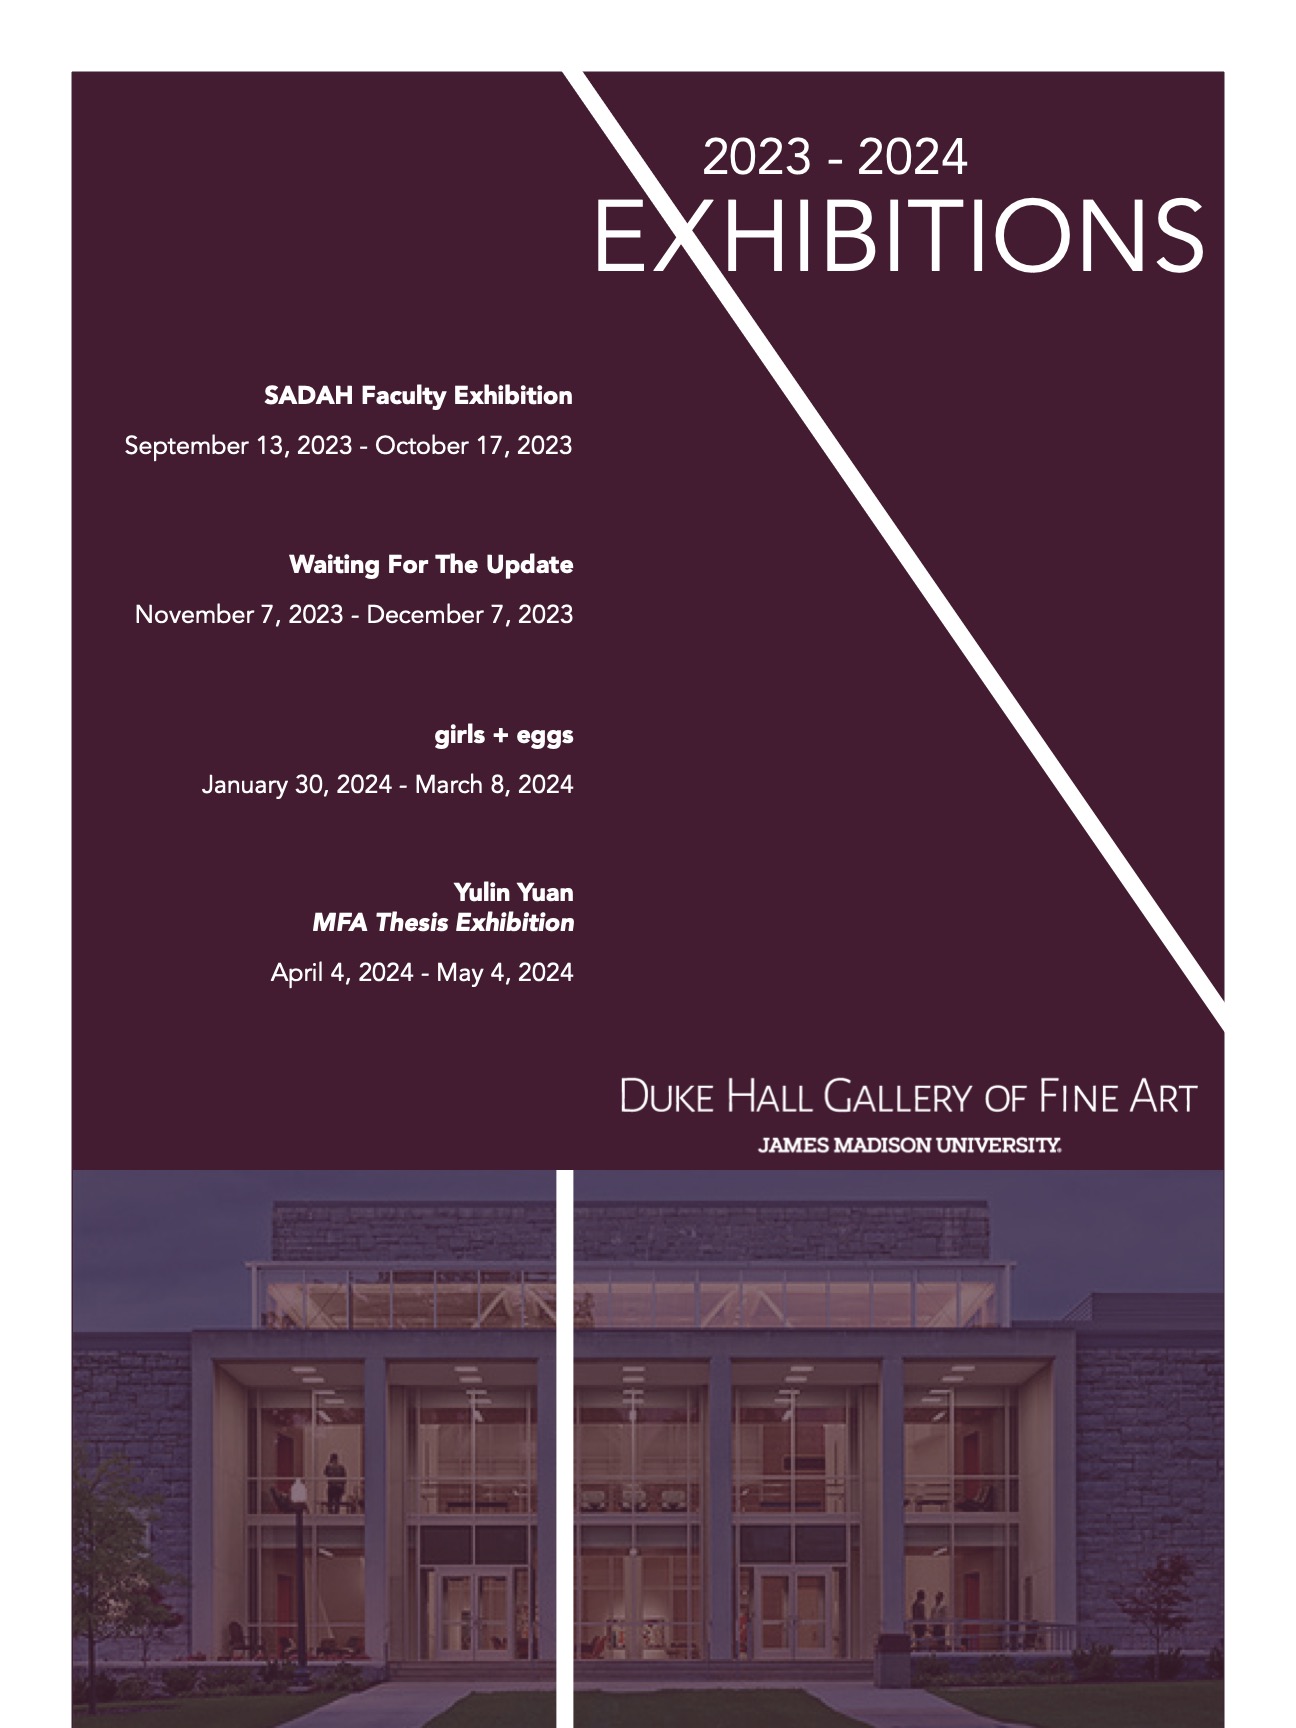 2023-2024 DHGFA Exhibition Schedule